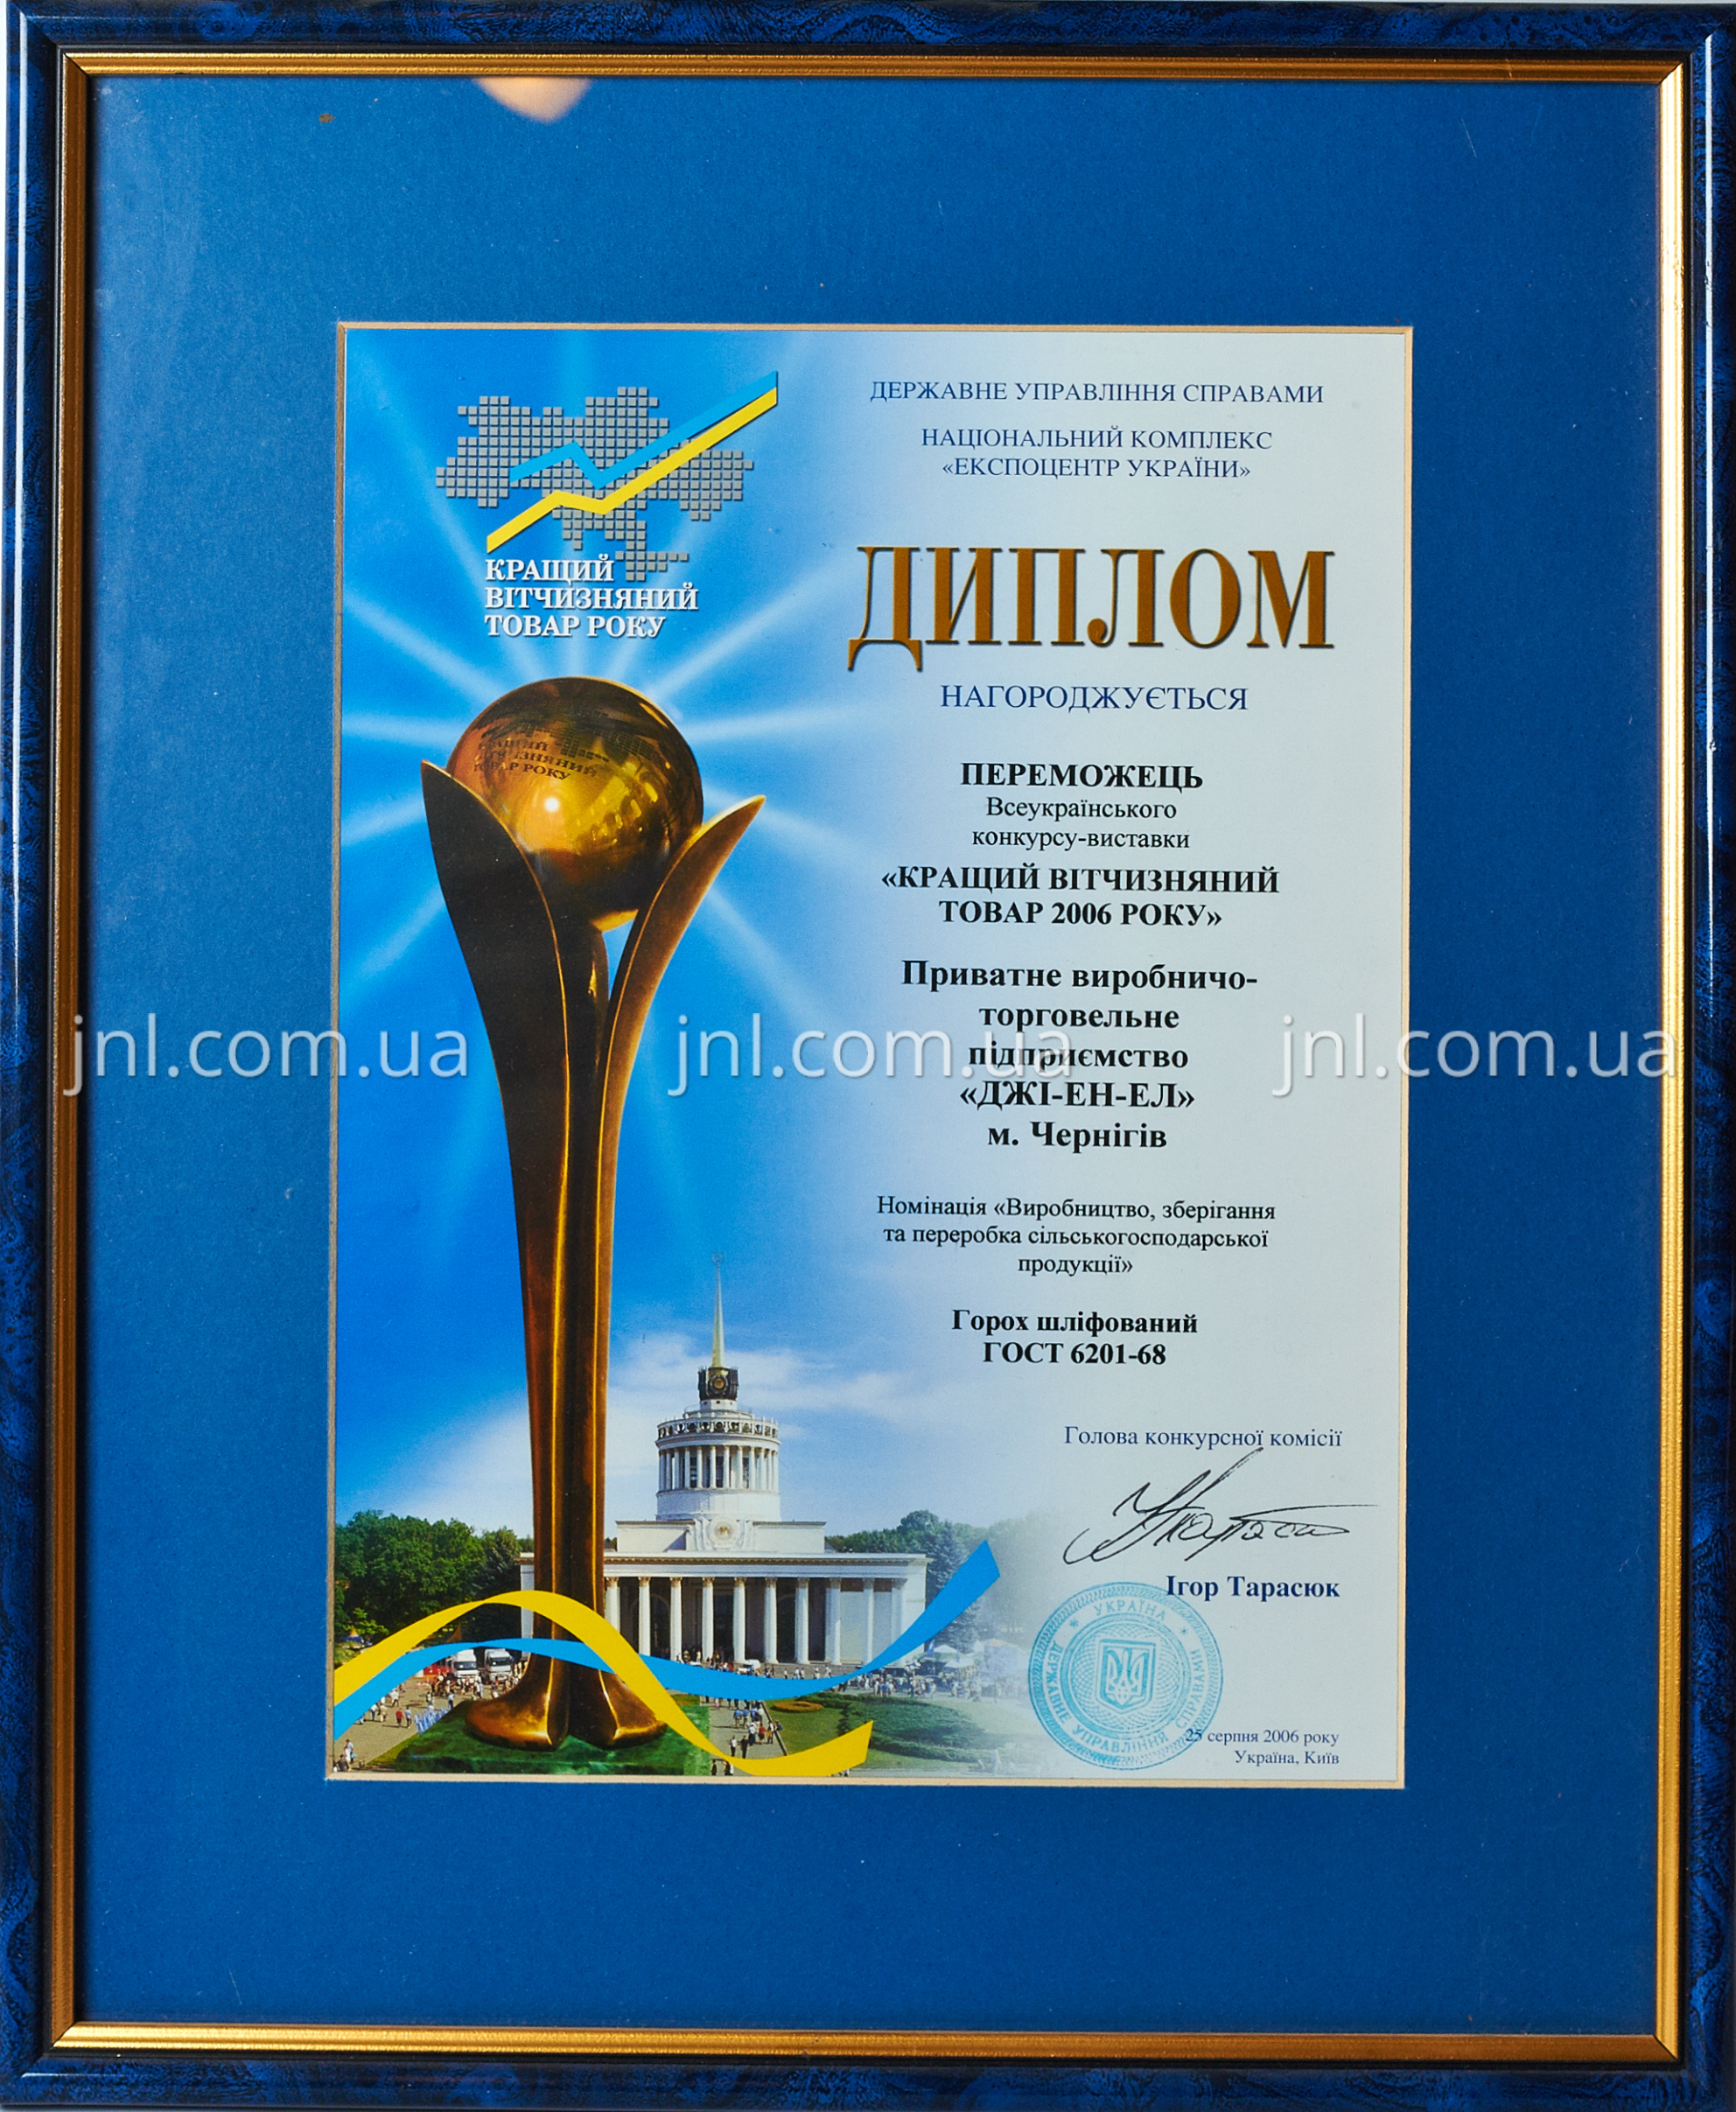        Победитель всеукраинского конкурса-выставки "Лучший отечественный товар-2006"